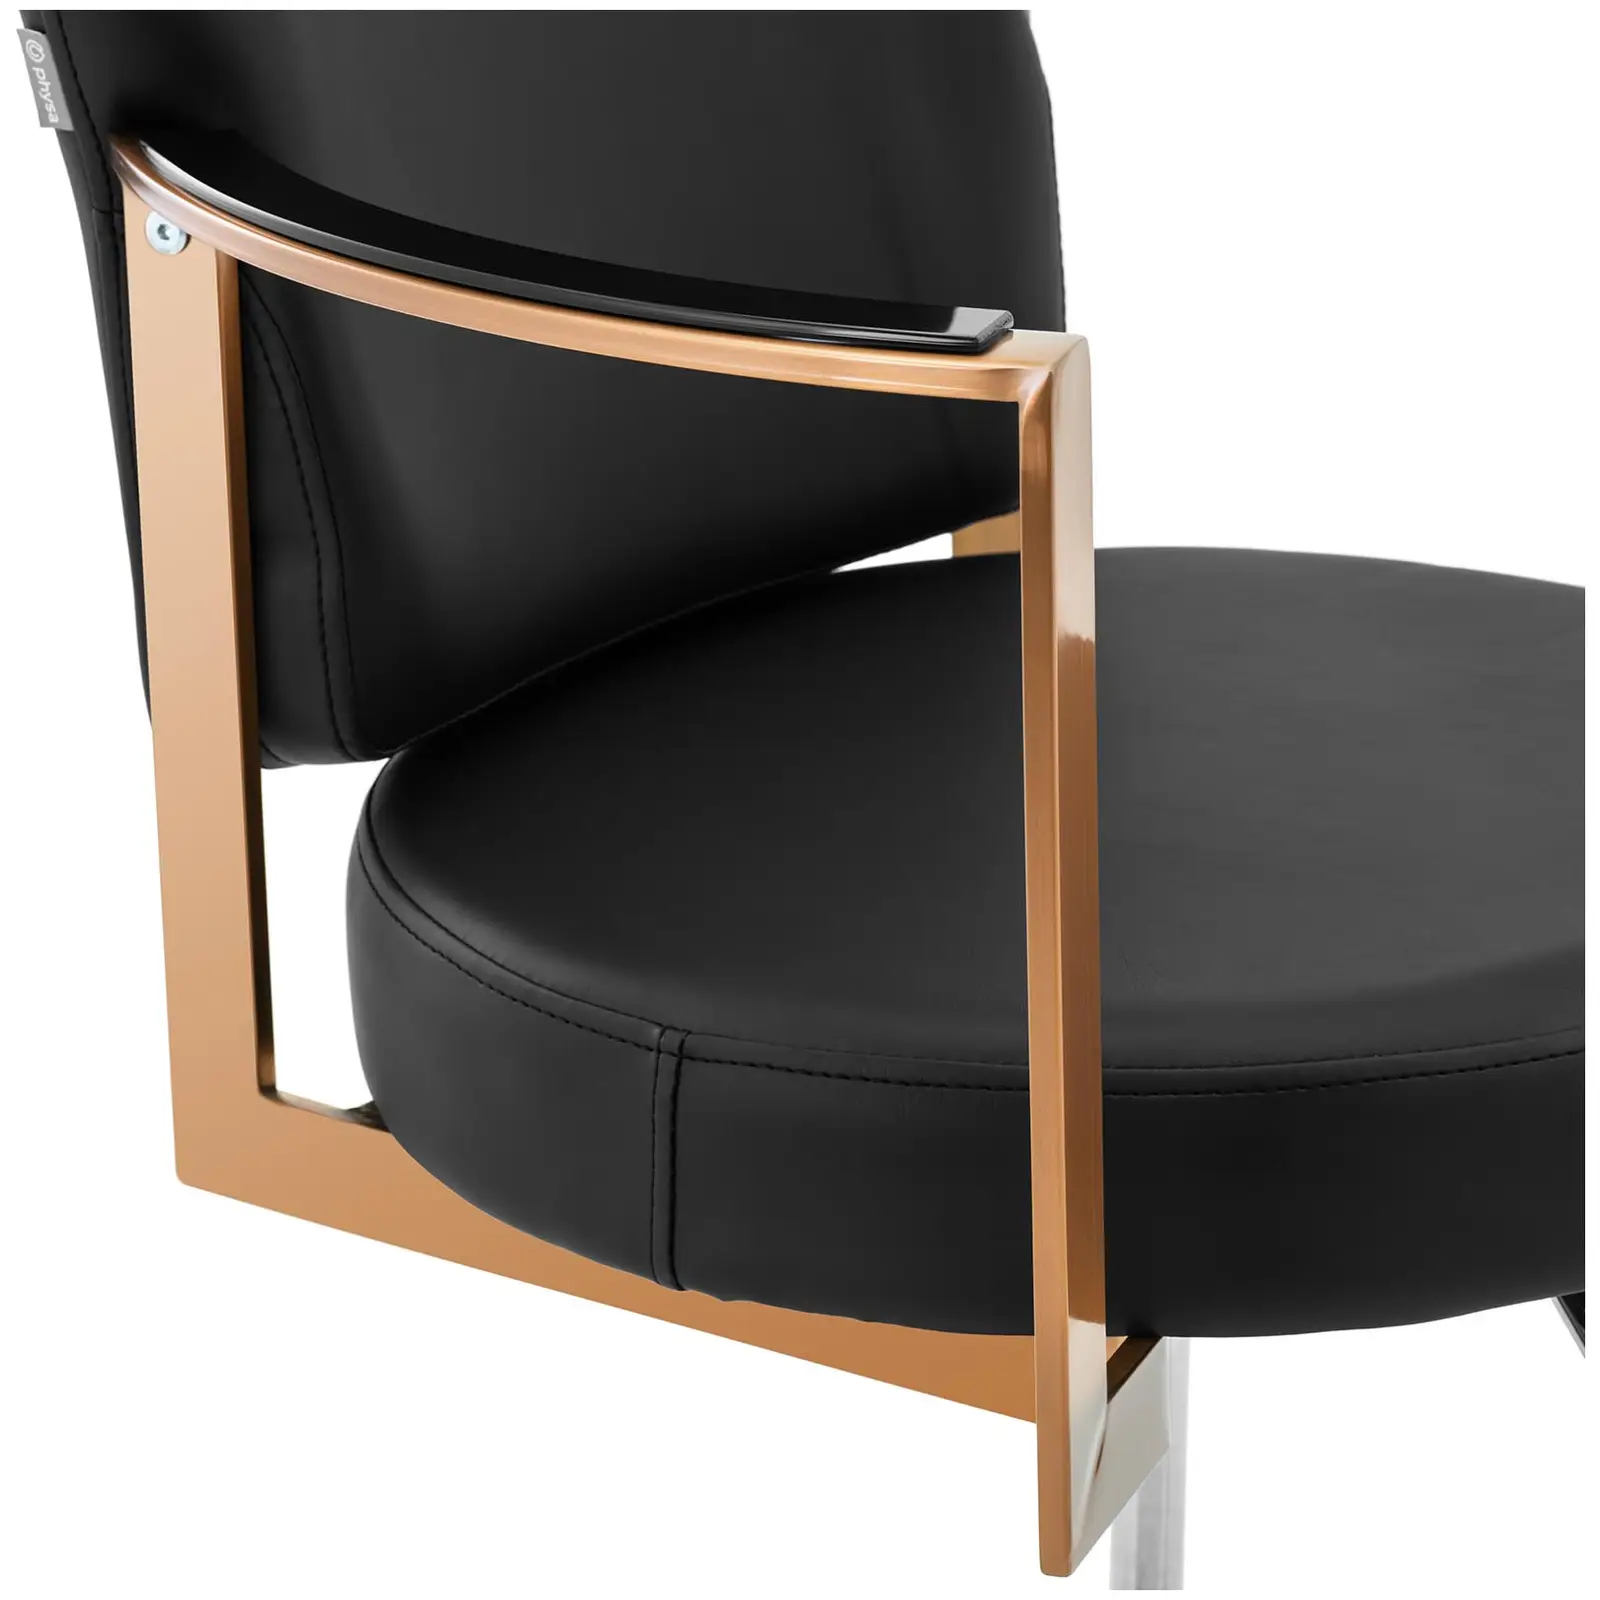 Cadeira de cabeleireiro com apoio para os pés - 900 - 1050 mm - 200 kg - Rosa dourado, Preto